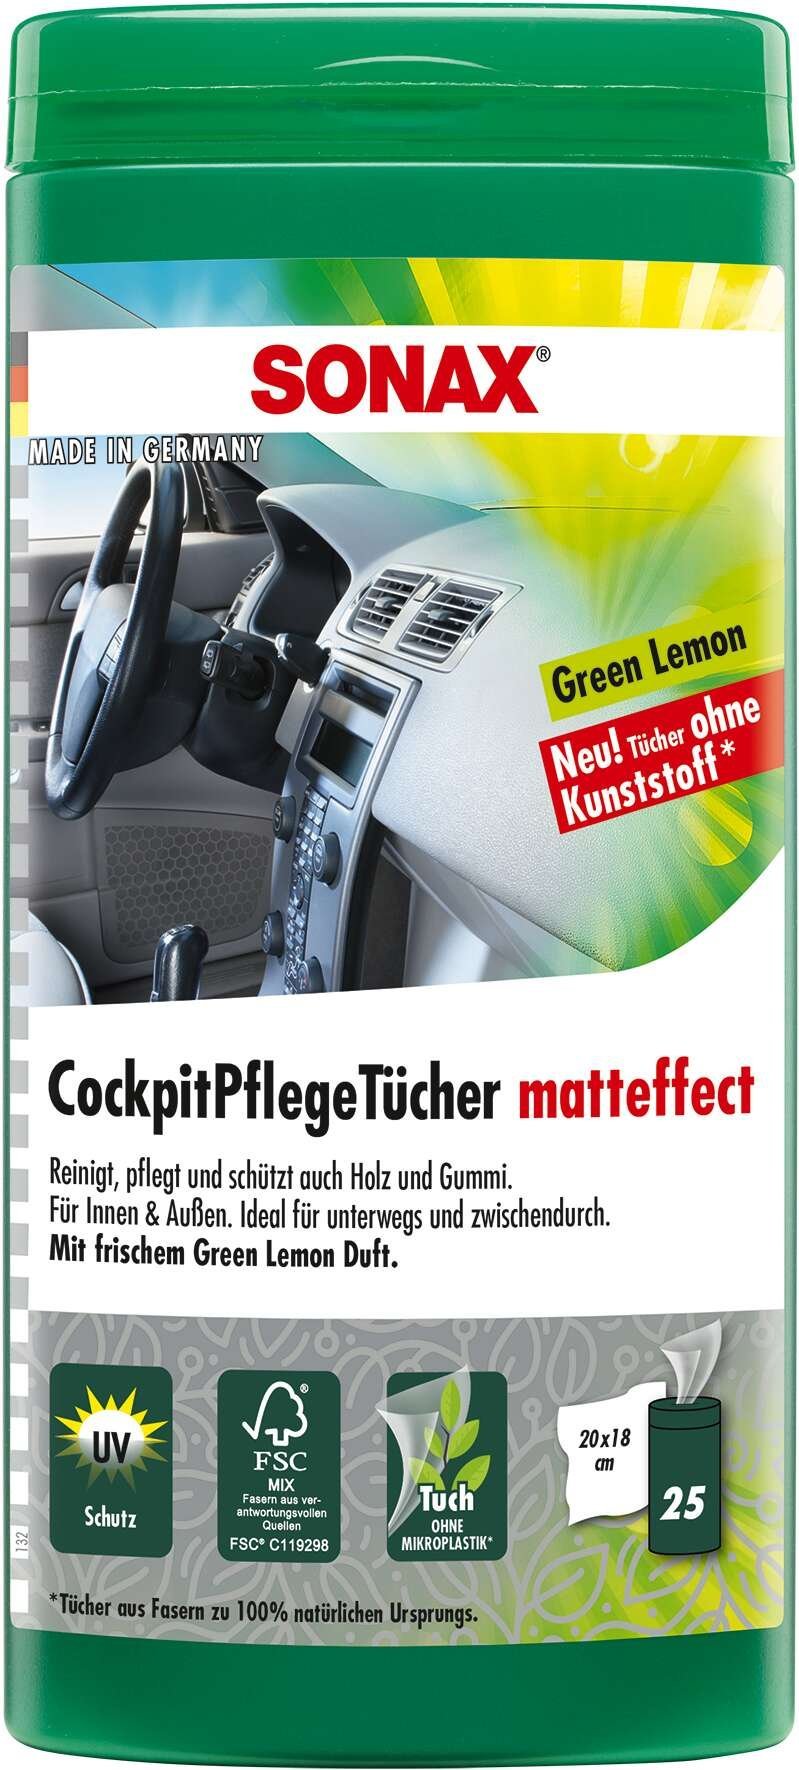 SONAX Cockpitpflegetücher PET-Dose 25 Feuchtücher GreenL Matteffect für Innen und Außen